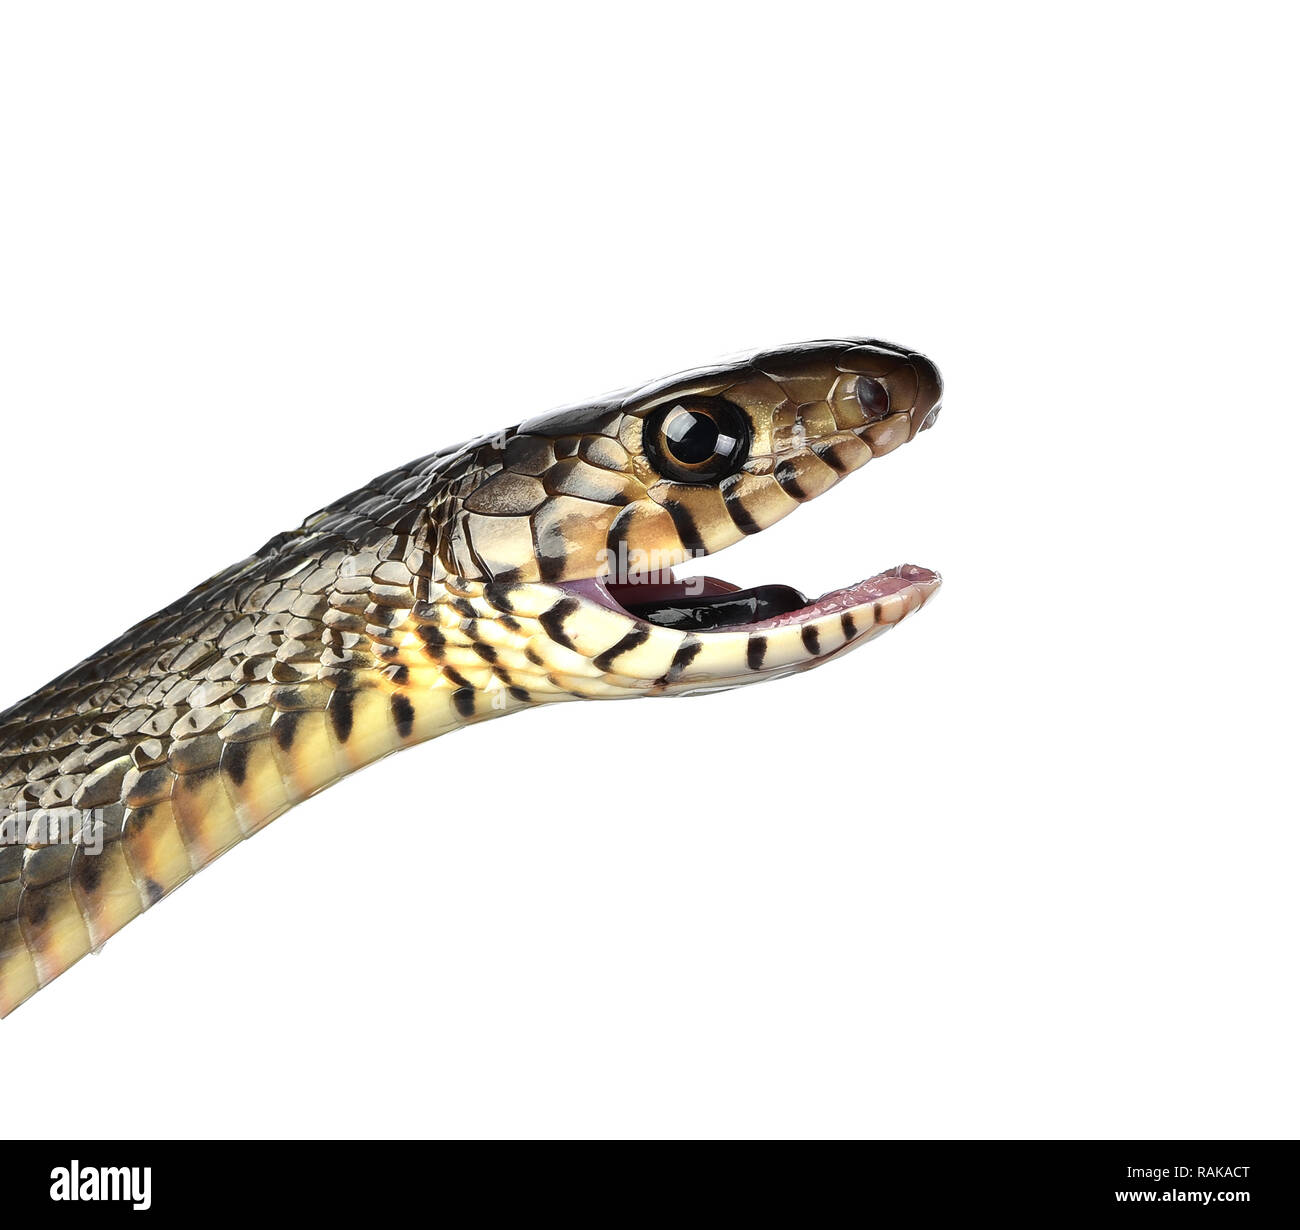 Serpent isolé sur fond blanc Banque D'Images